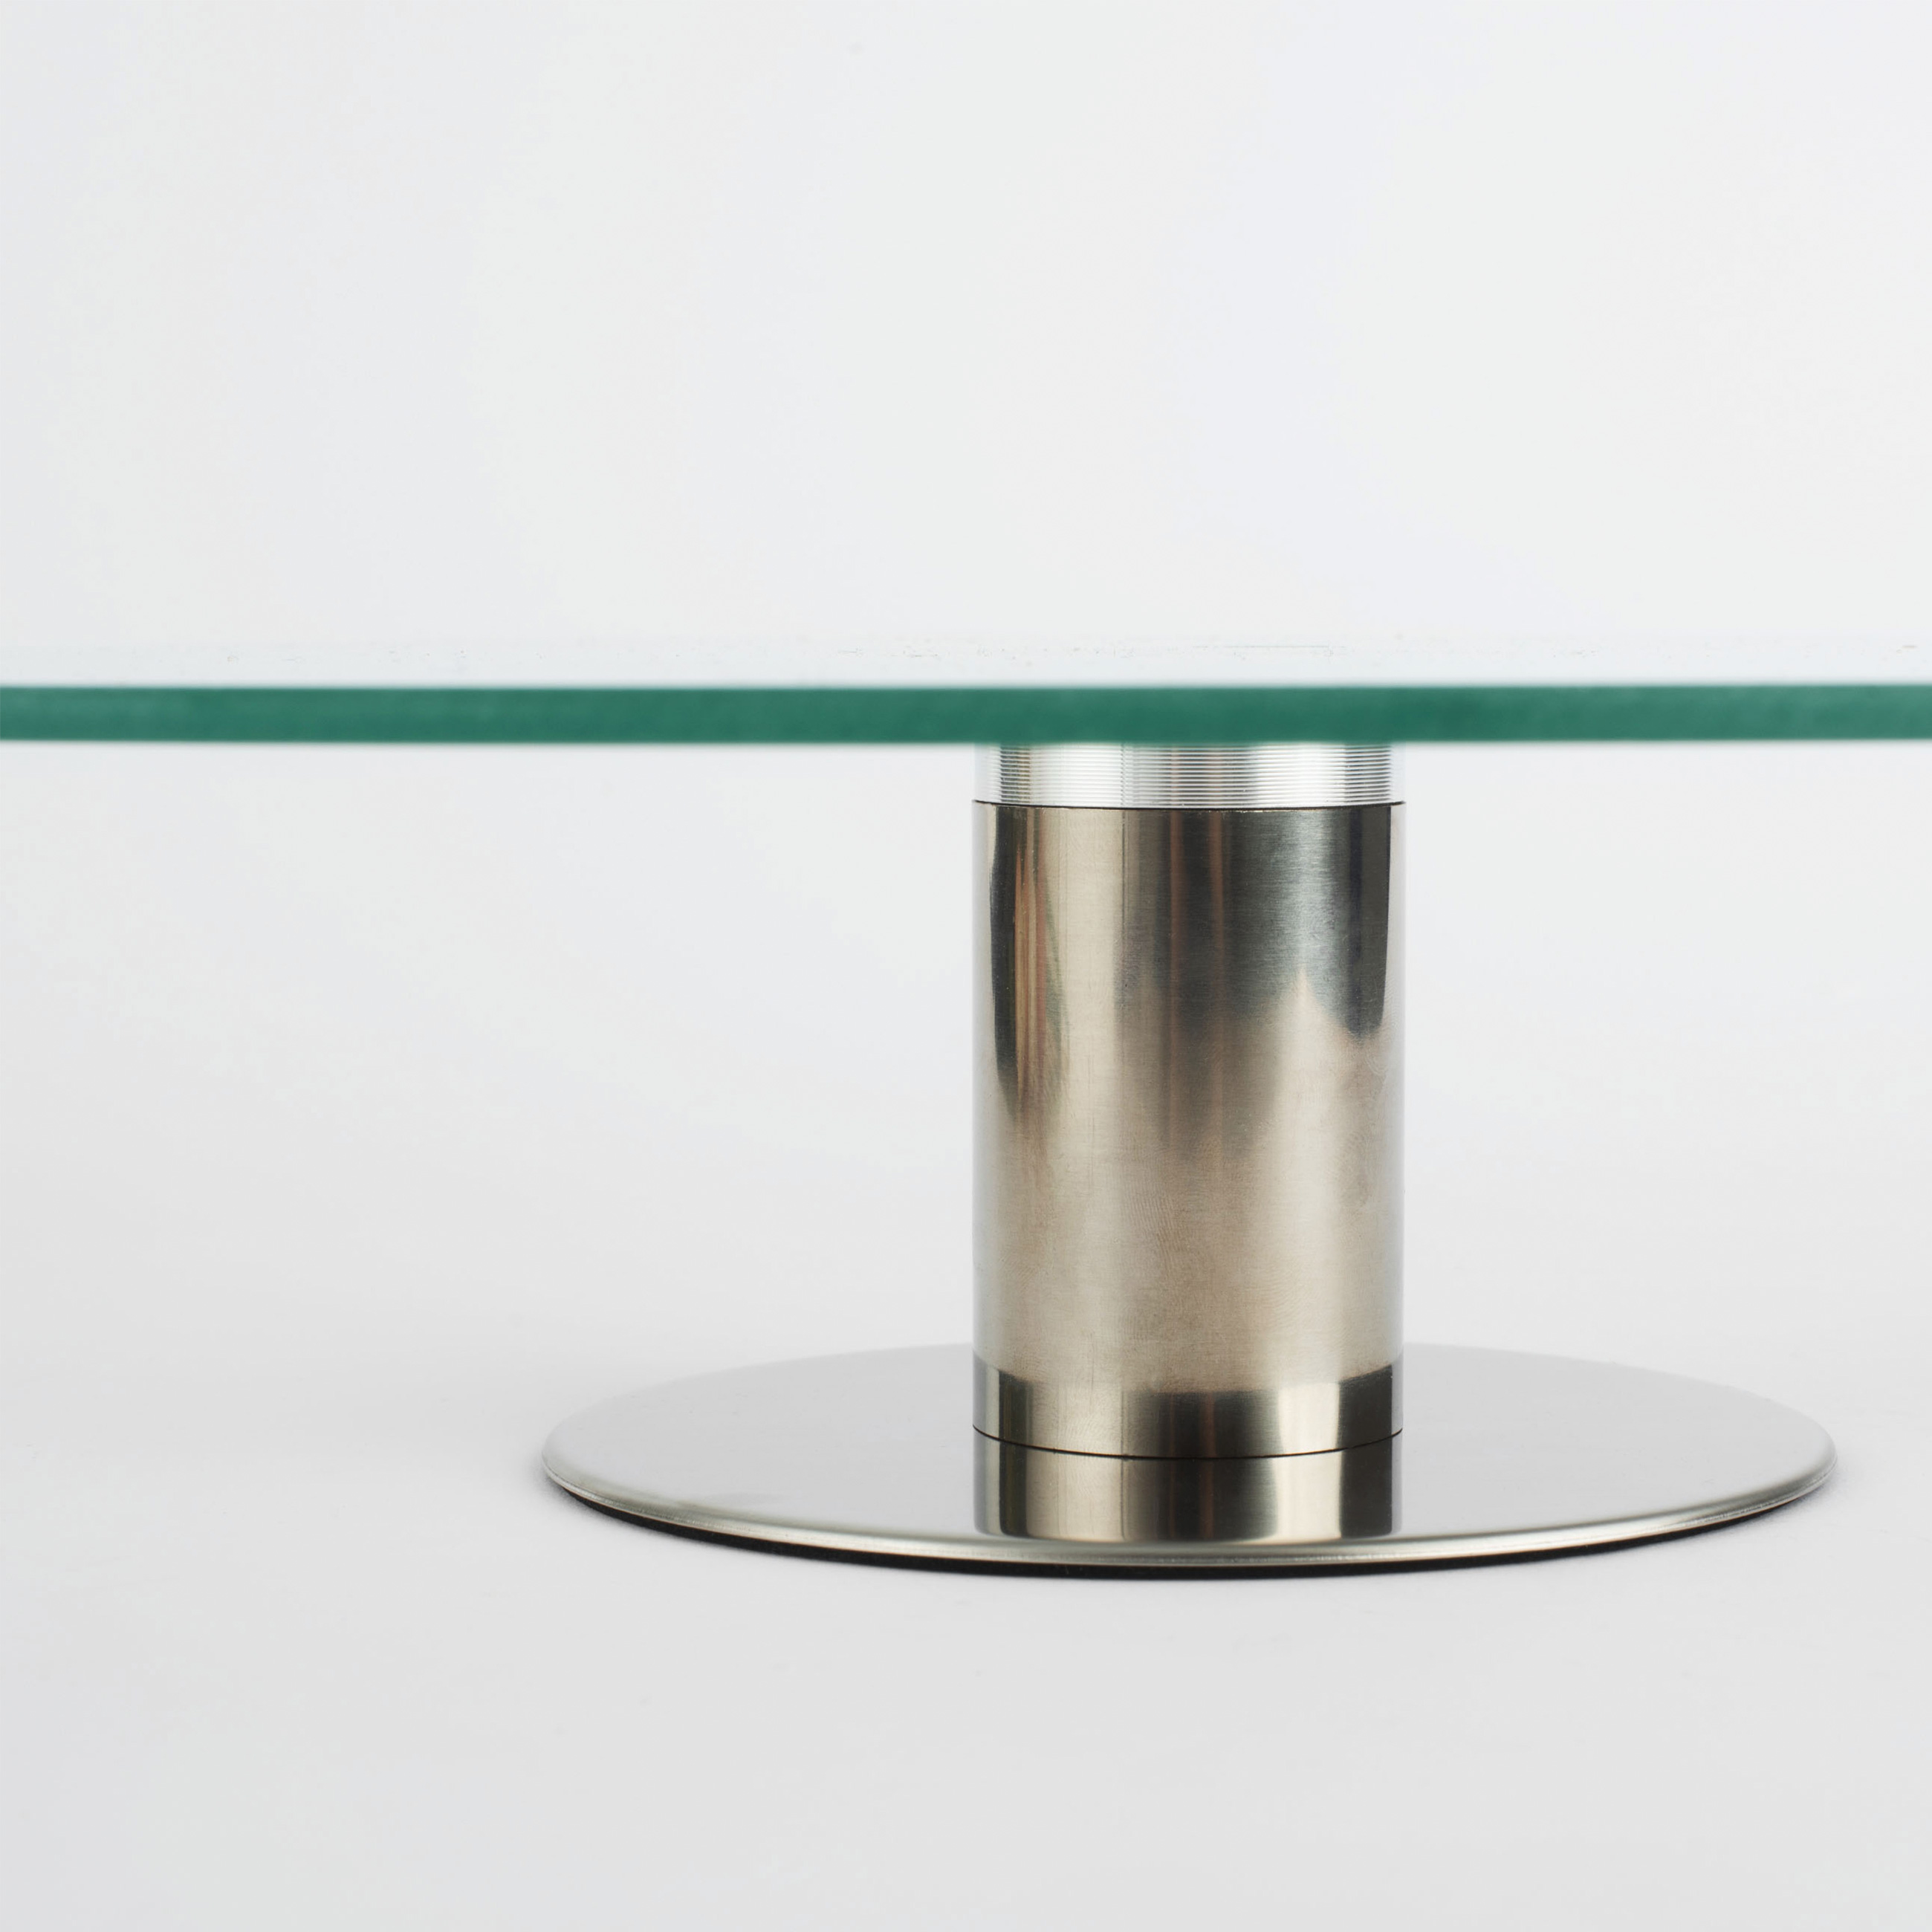 Dish on a leg, 30x7 cm, glass / steel, Classic изображение № 5